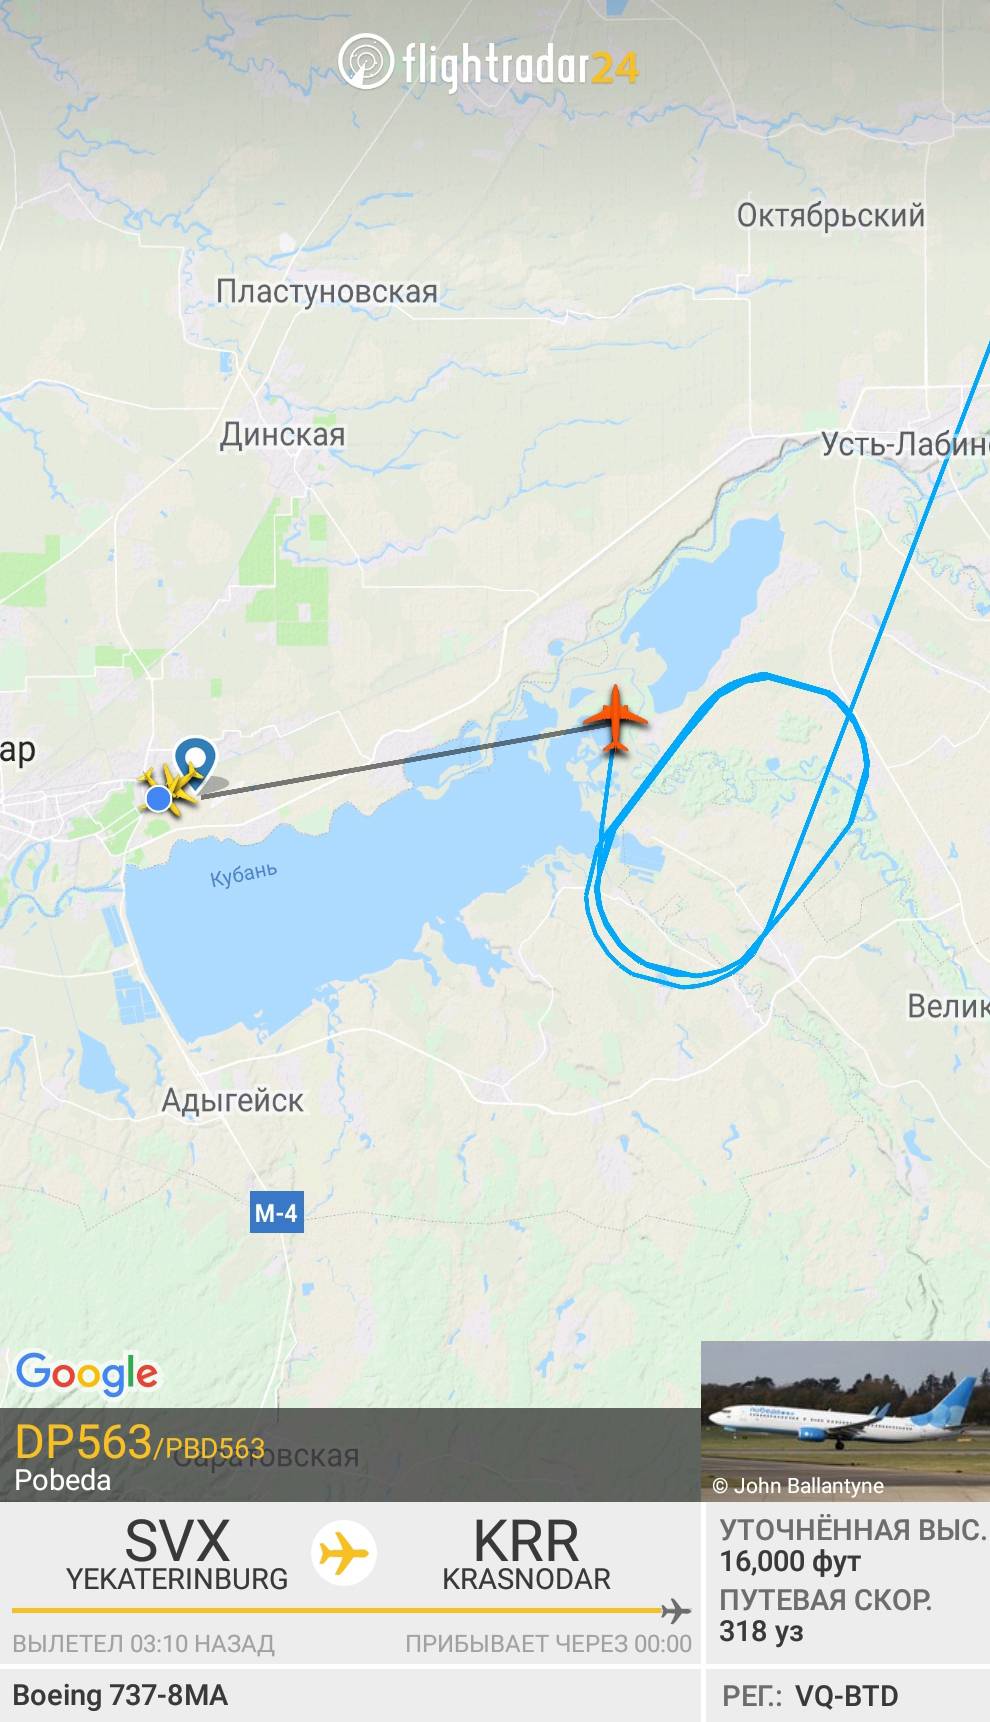 Скриншот приложения «Флайтрадар»: мой самолет кружит над Краснодаром